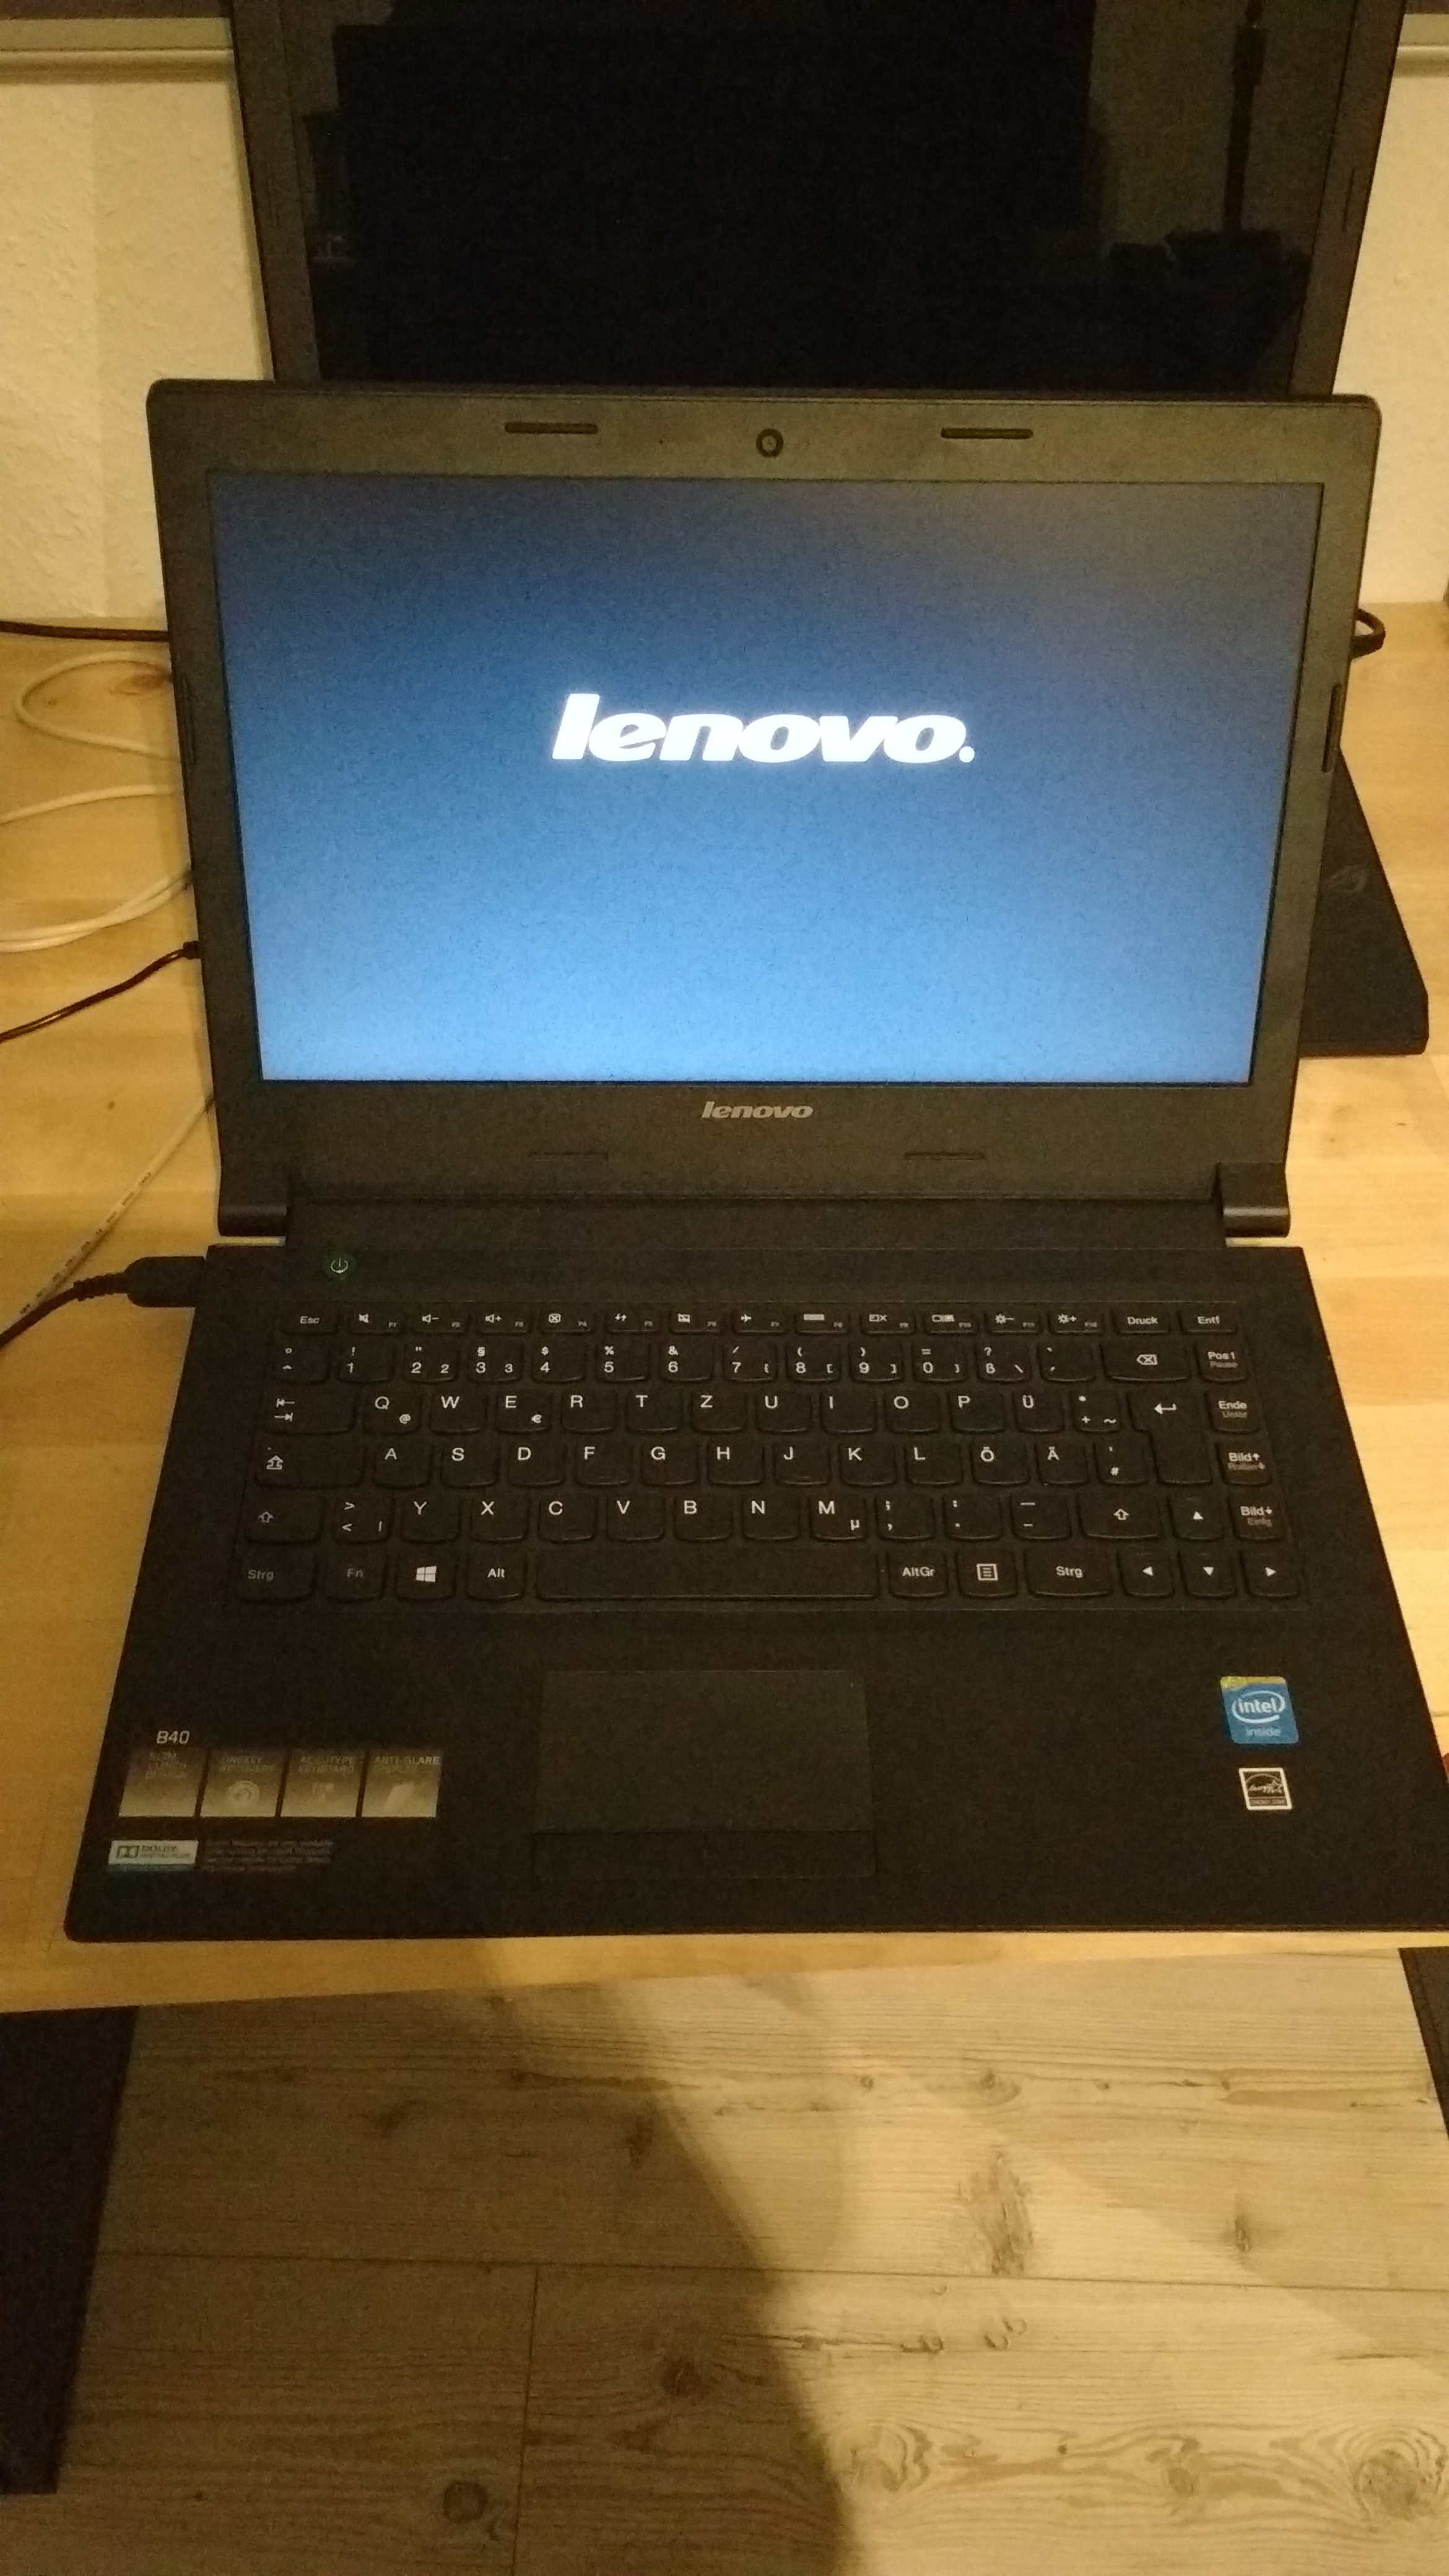 Lenovo Startet Nach Wiederherstellung Nicht Computer Technik